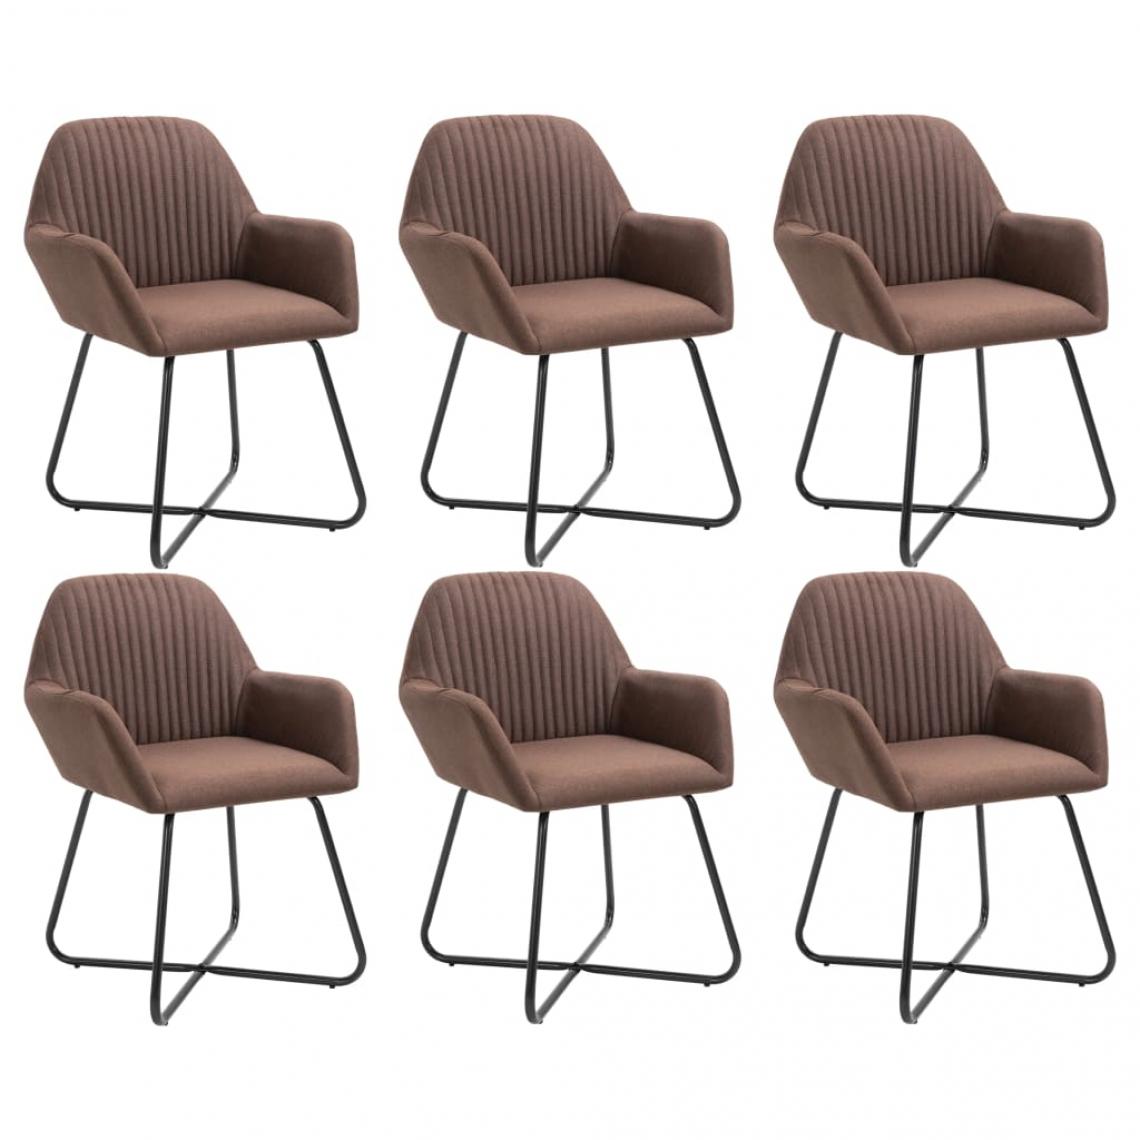 Decoshop26 - Lot de 6 chaises de salle à manger cuisine design moderne tissu marron CDS022633 - Chaises